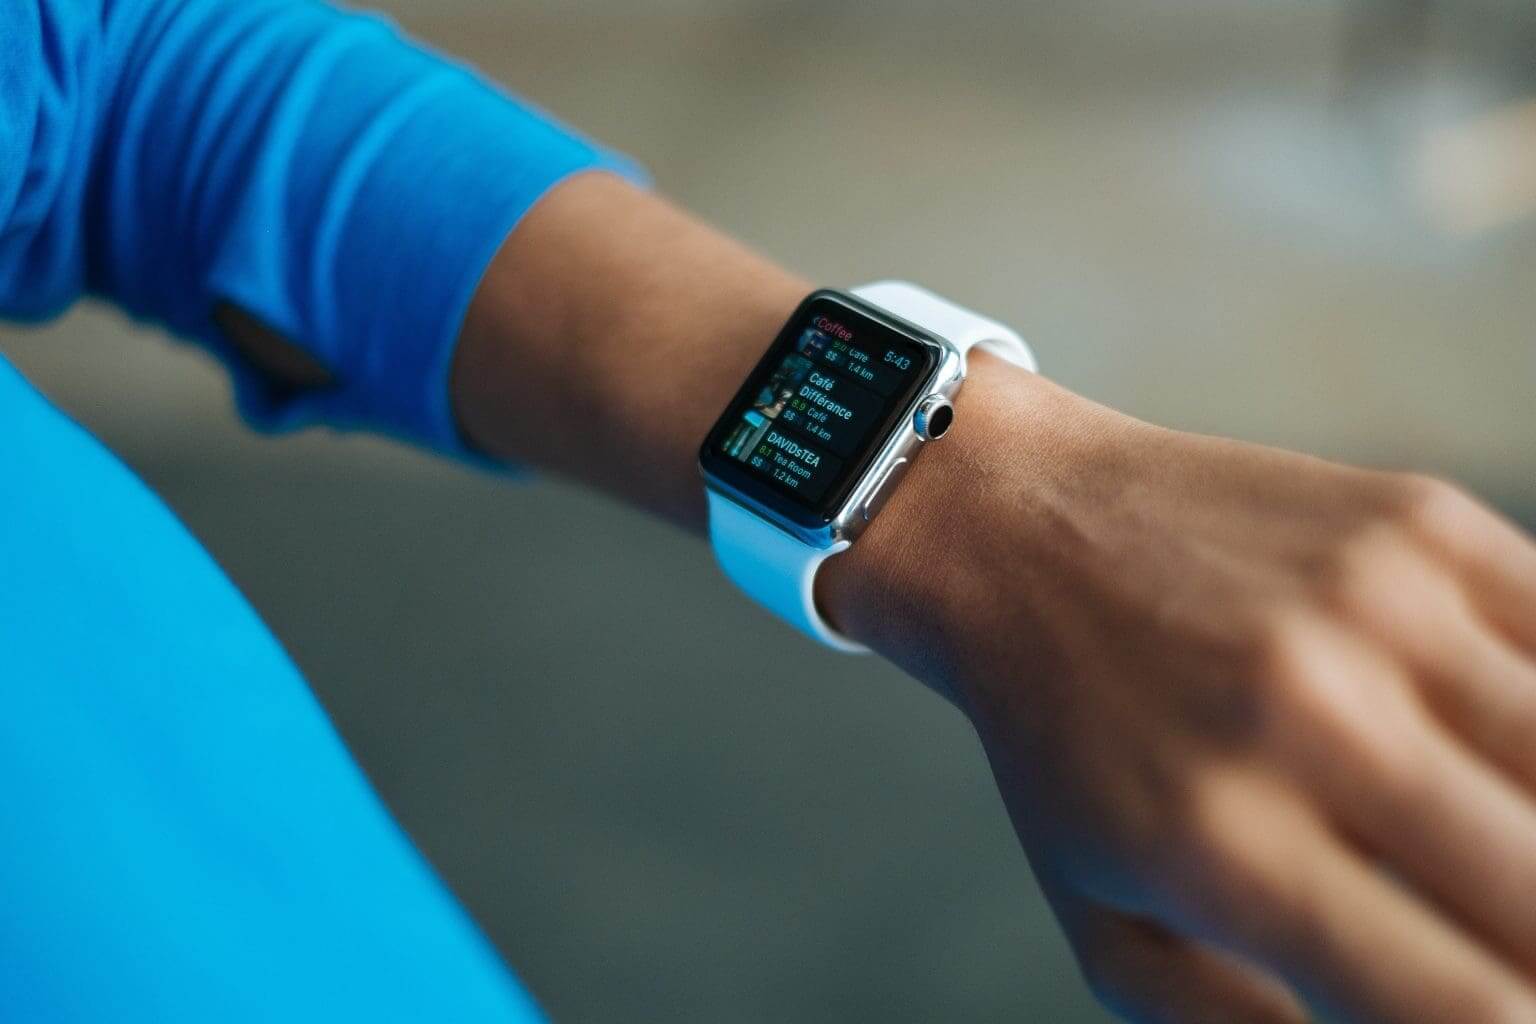 كيفية التحقق من صحة بطارية Apple Watch: كل ما تحتاج إلى معرفته - %categories